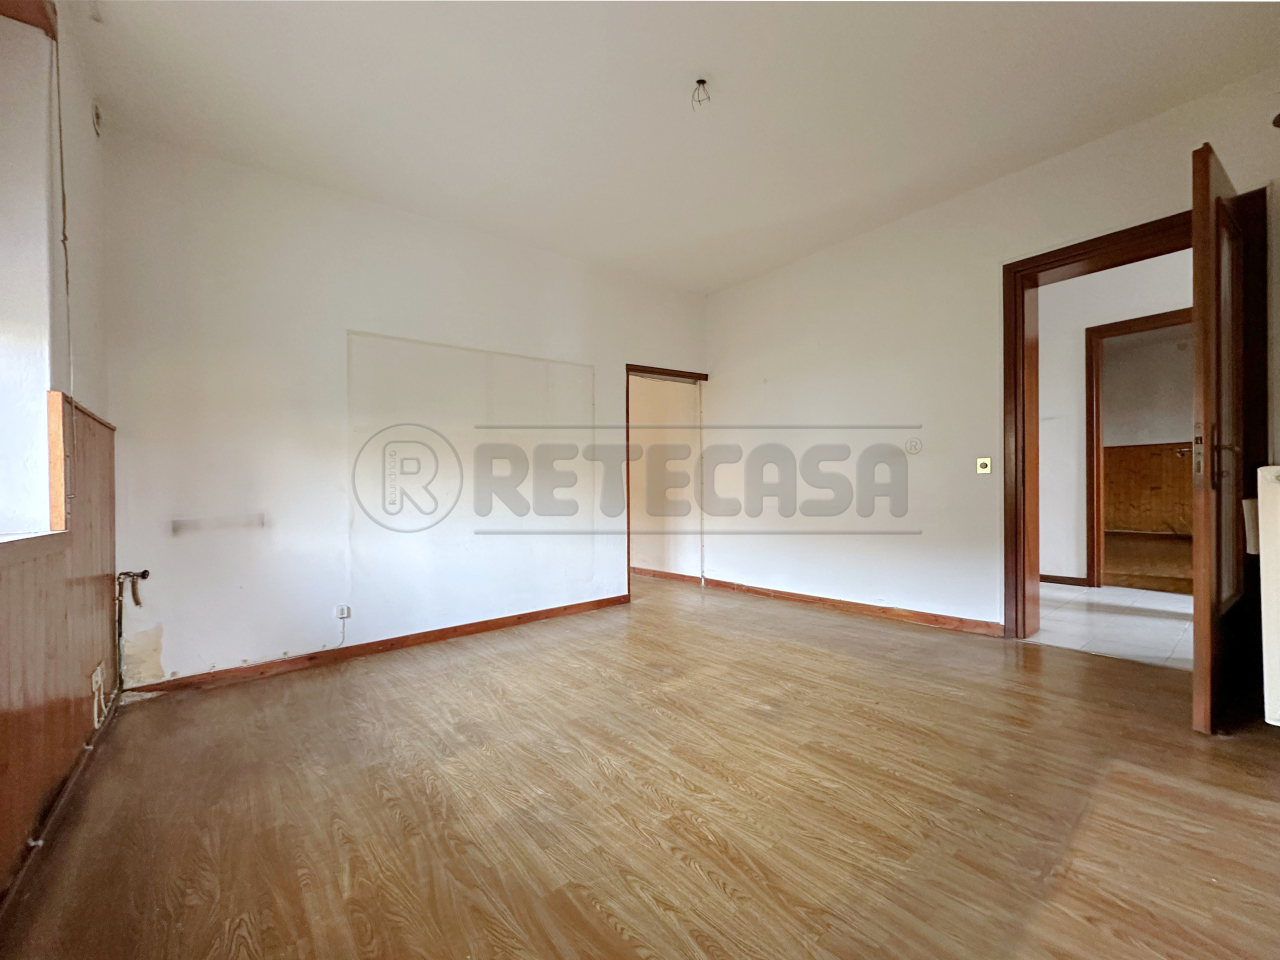 Appartamento in vendita a Schio, 3 locali, prezzo € 85.000 | PortaleAgenzieImmobiliari.it